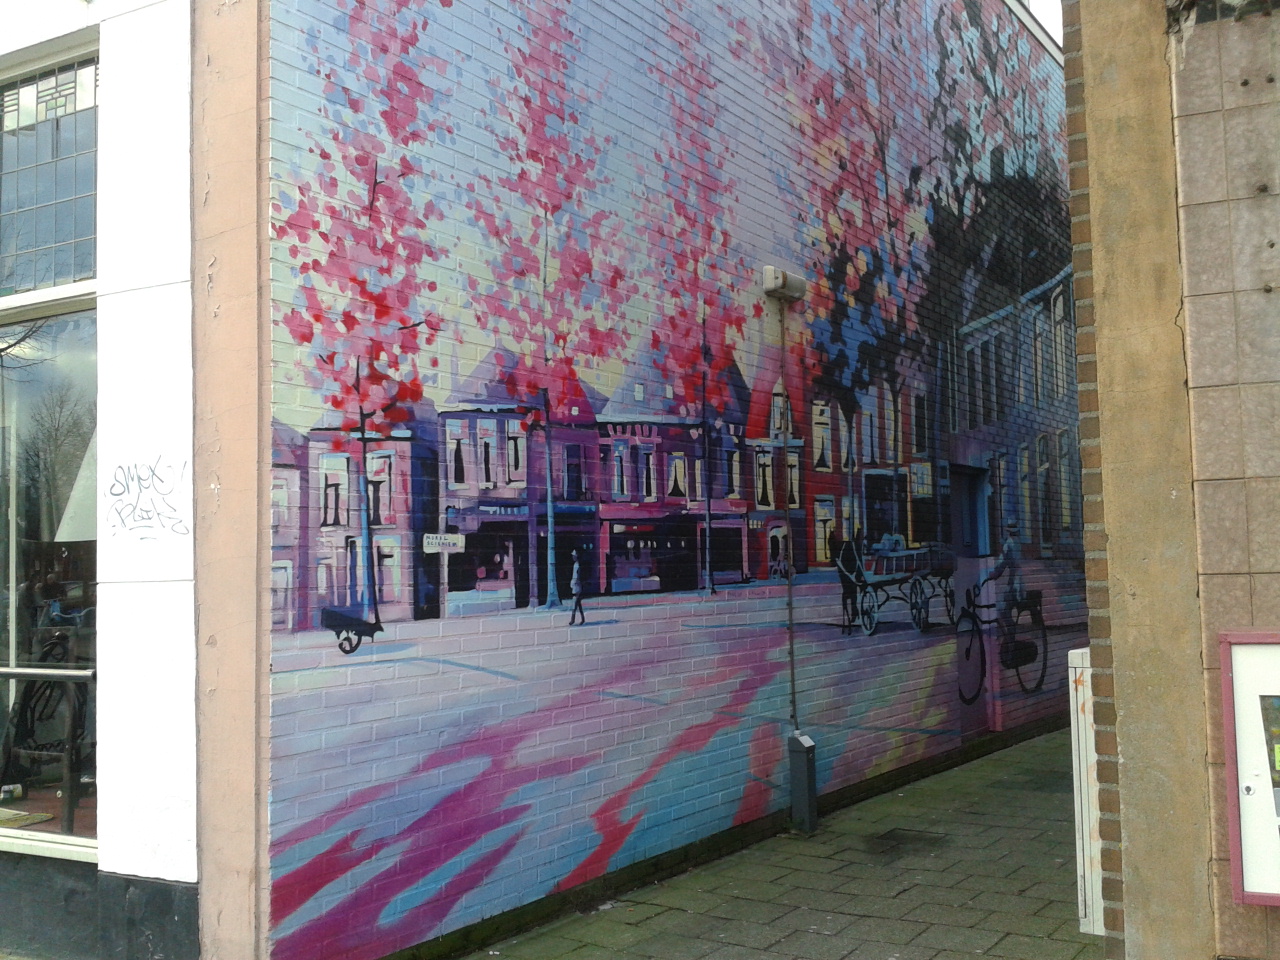 Beautiful street art in Zwolle, Holland.